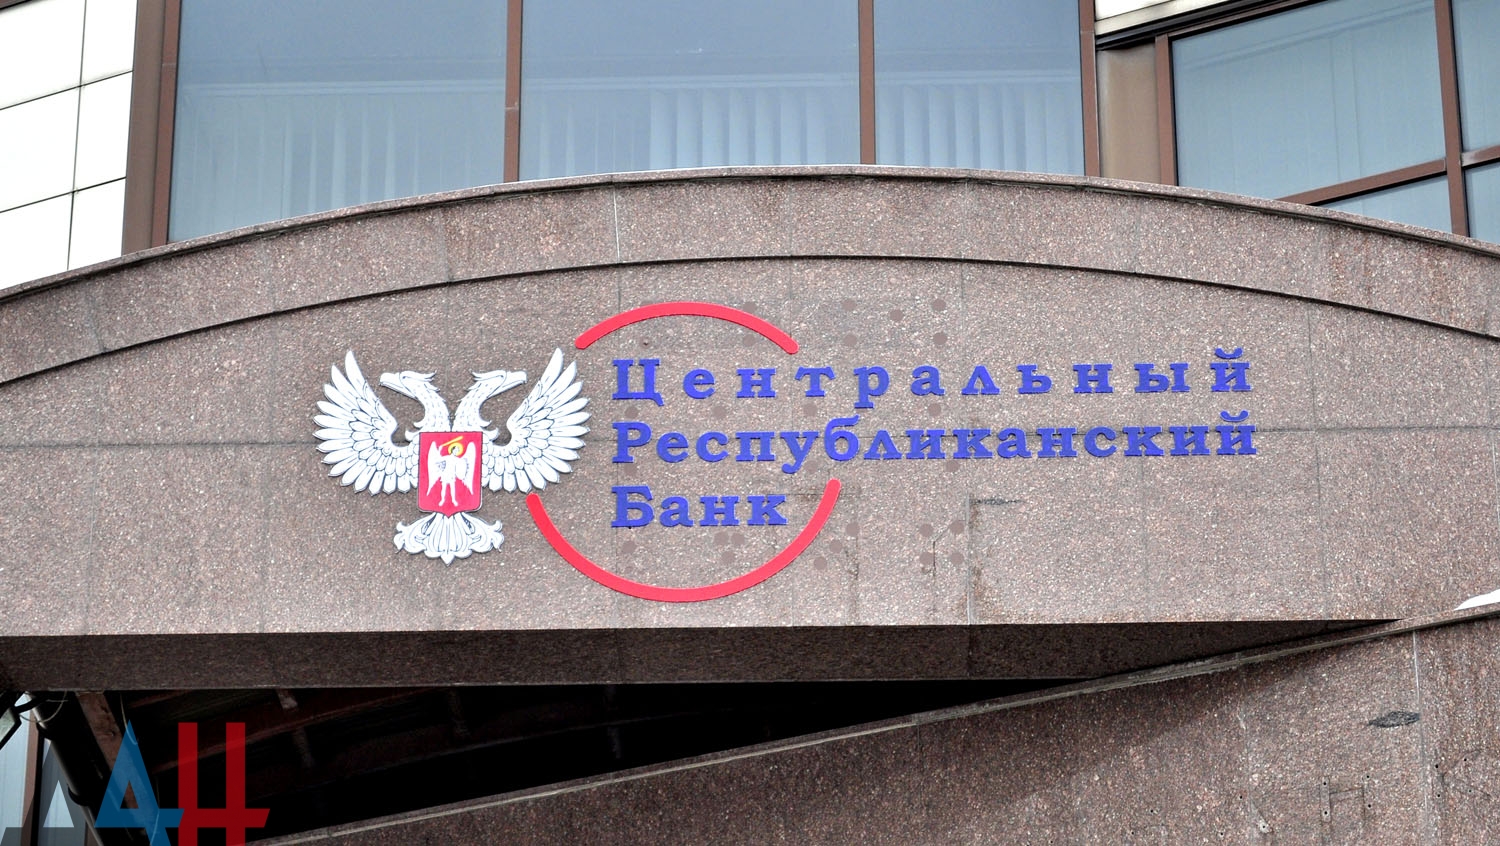 Посещение Пантелеймоновского отделения Банка без масок запрещено!